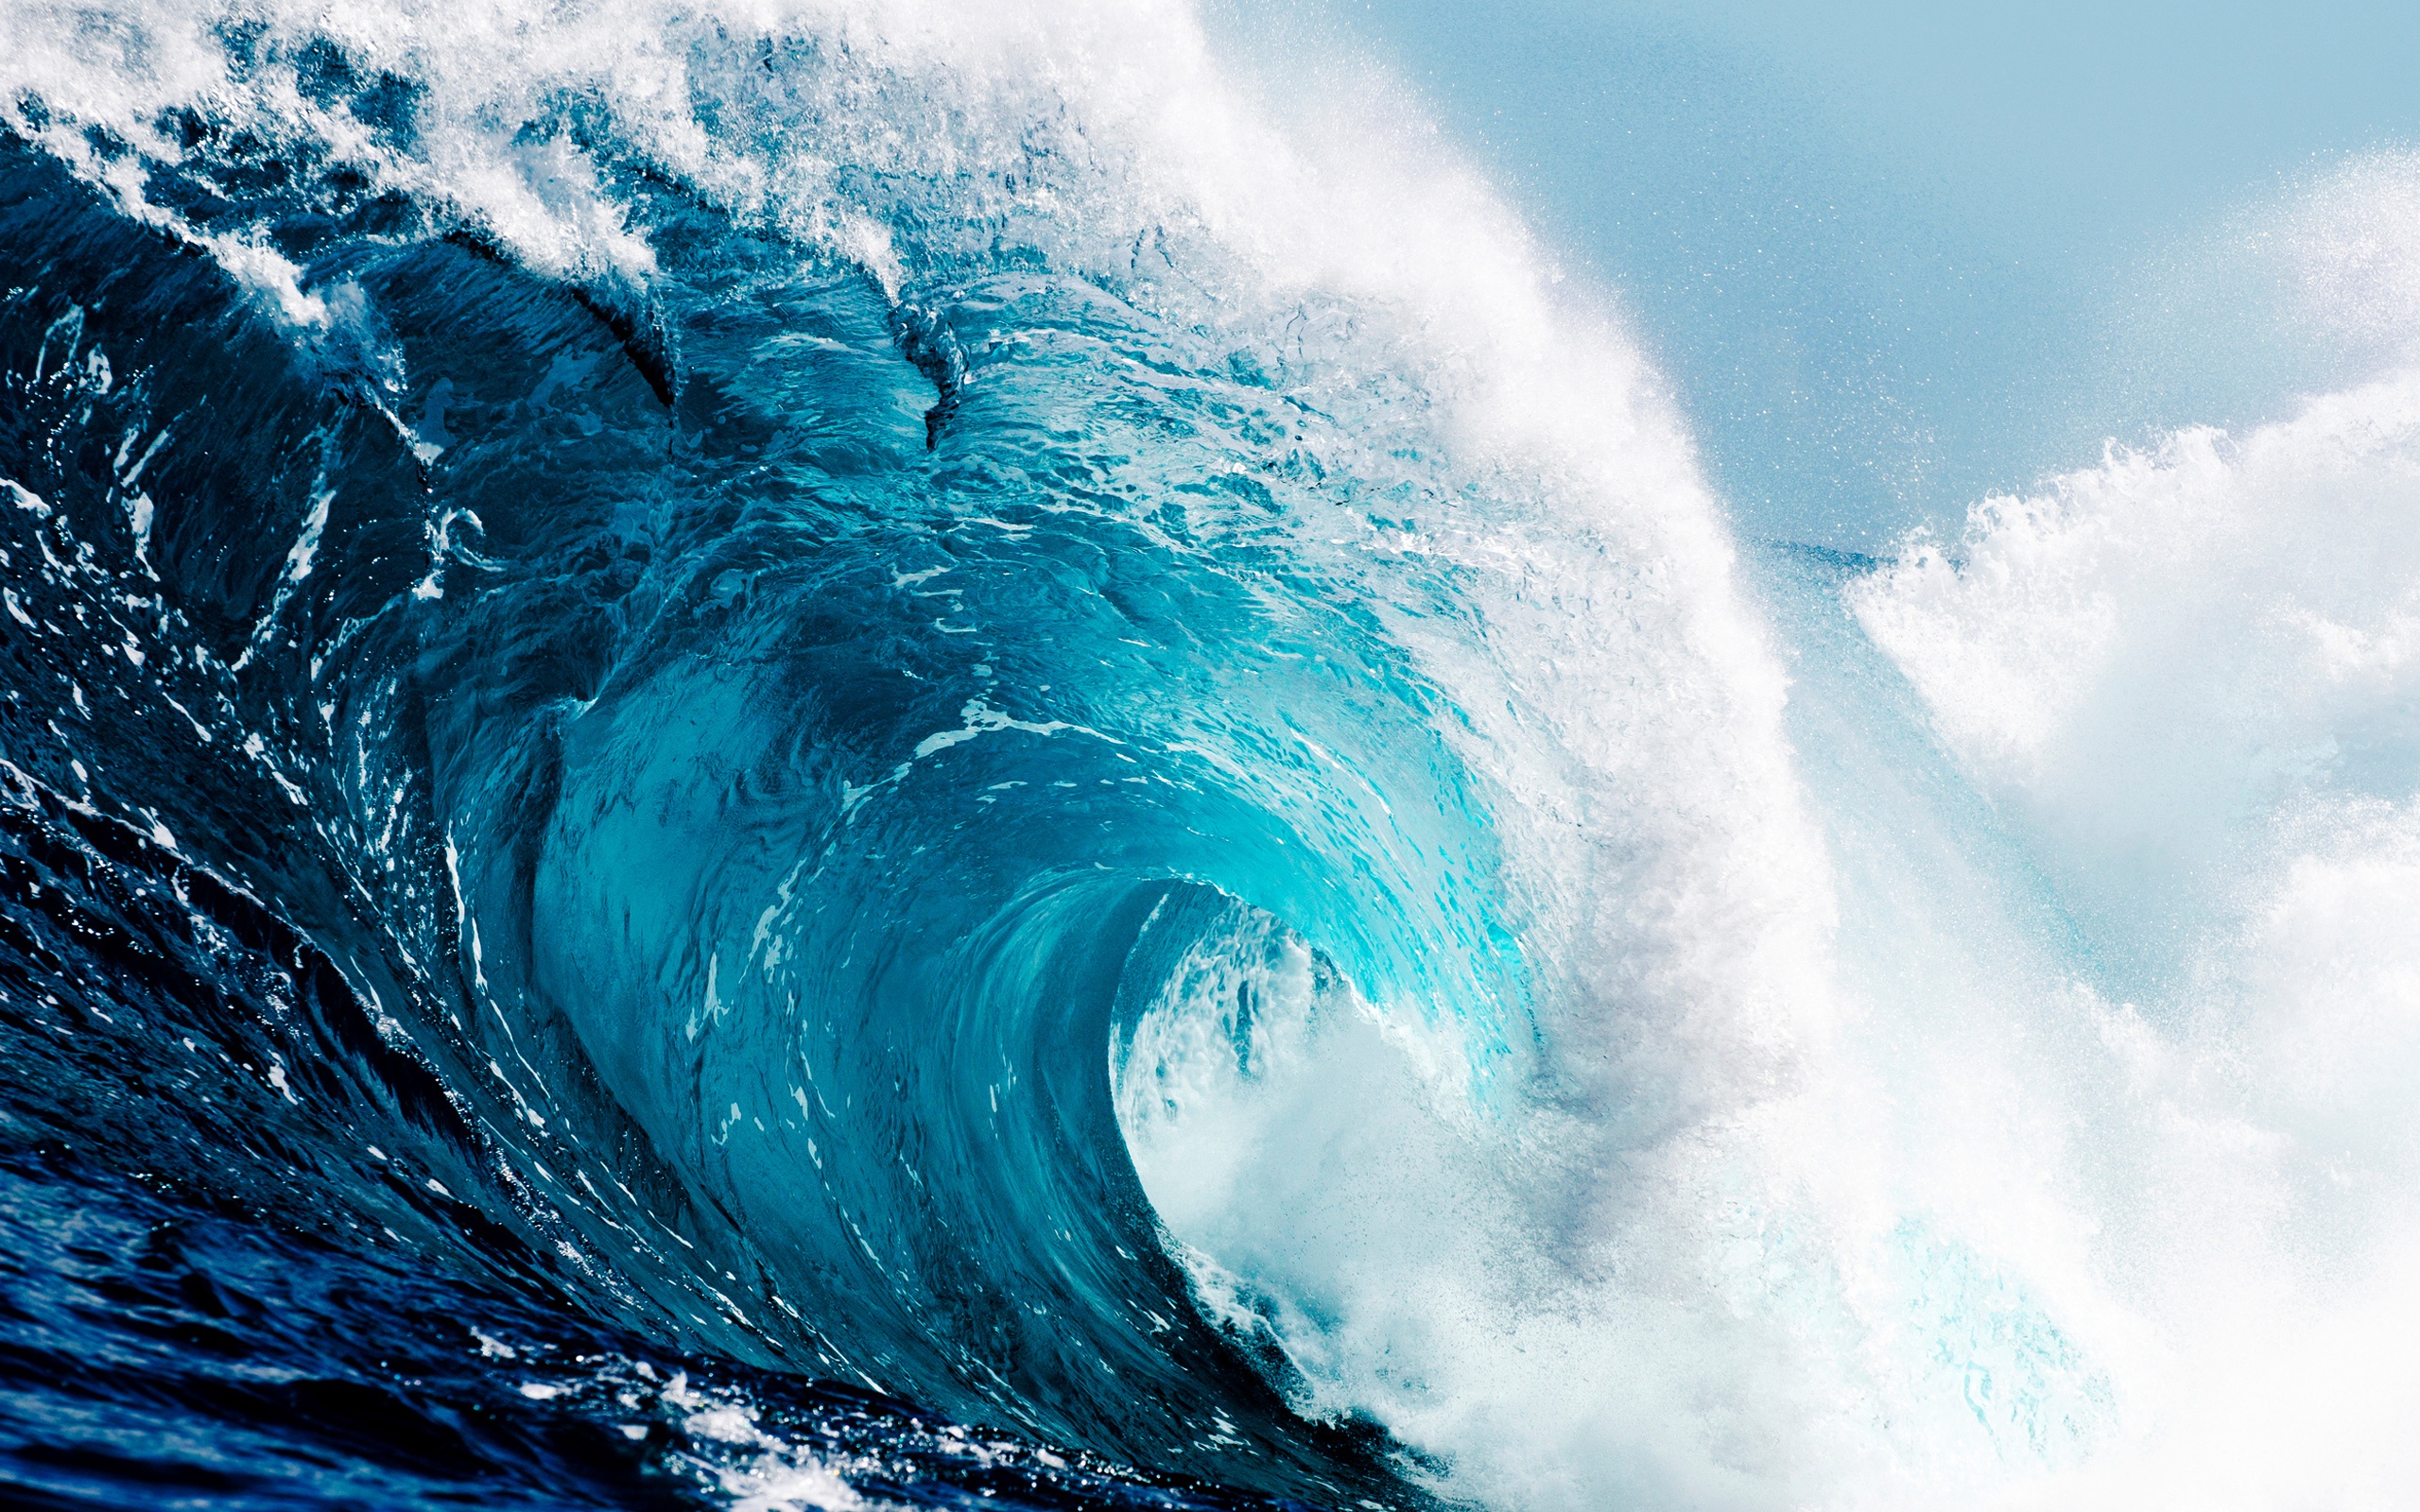 Wave: Hình ảnh những đợt sóng dữ dội sẽ khiến bạn cảm thấy như đang đứng trên bờ biển, thưởng thức cảm giác tự do và bình yên. Sóng là biểu tượng của sự mạnh mẽ và quyền uy, mang đến một khung cảnh đầy ma mị nhưng cũng đầy thu hút. Hãy chiêm ngưỡng những hình ảnh độc đáo của \